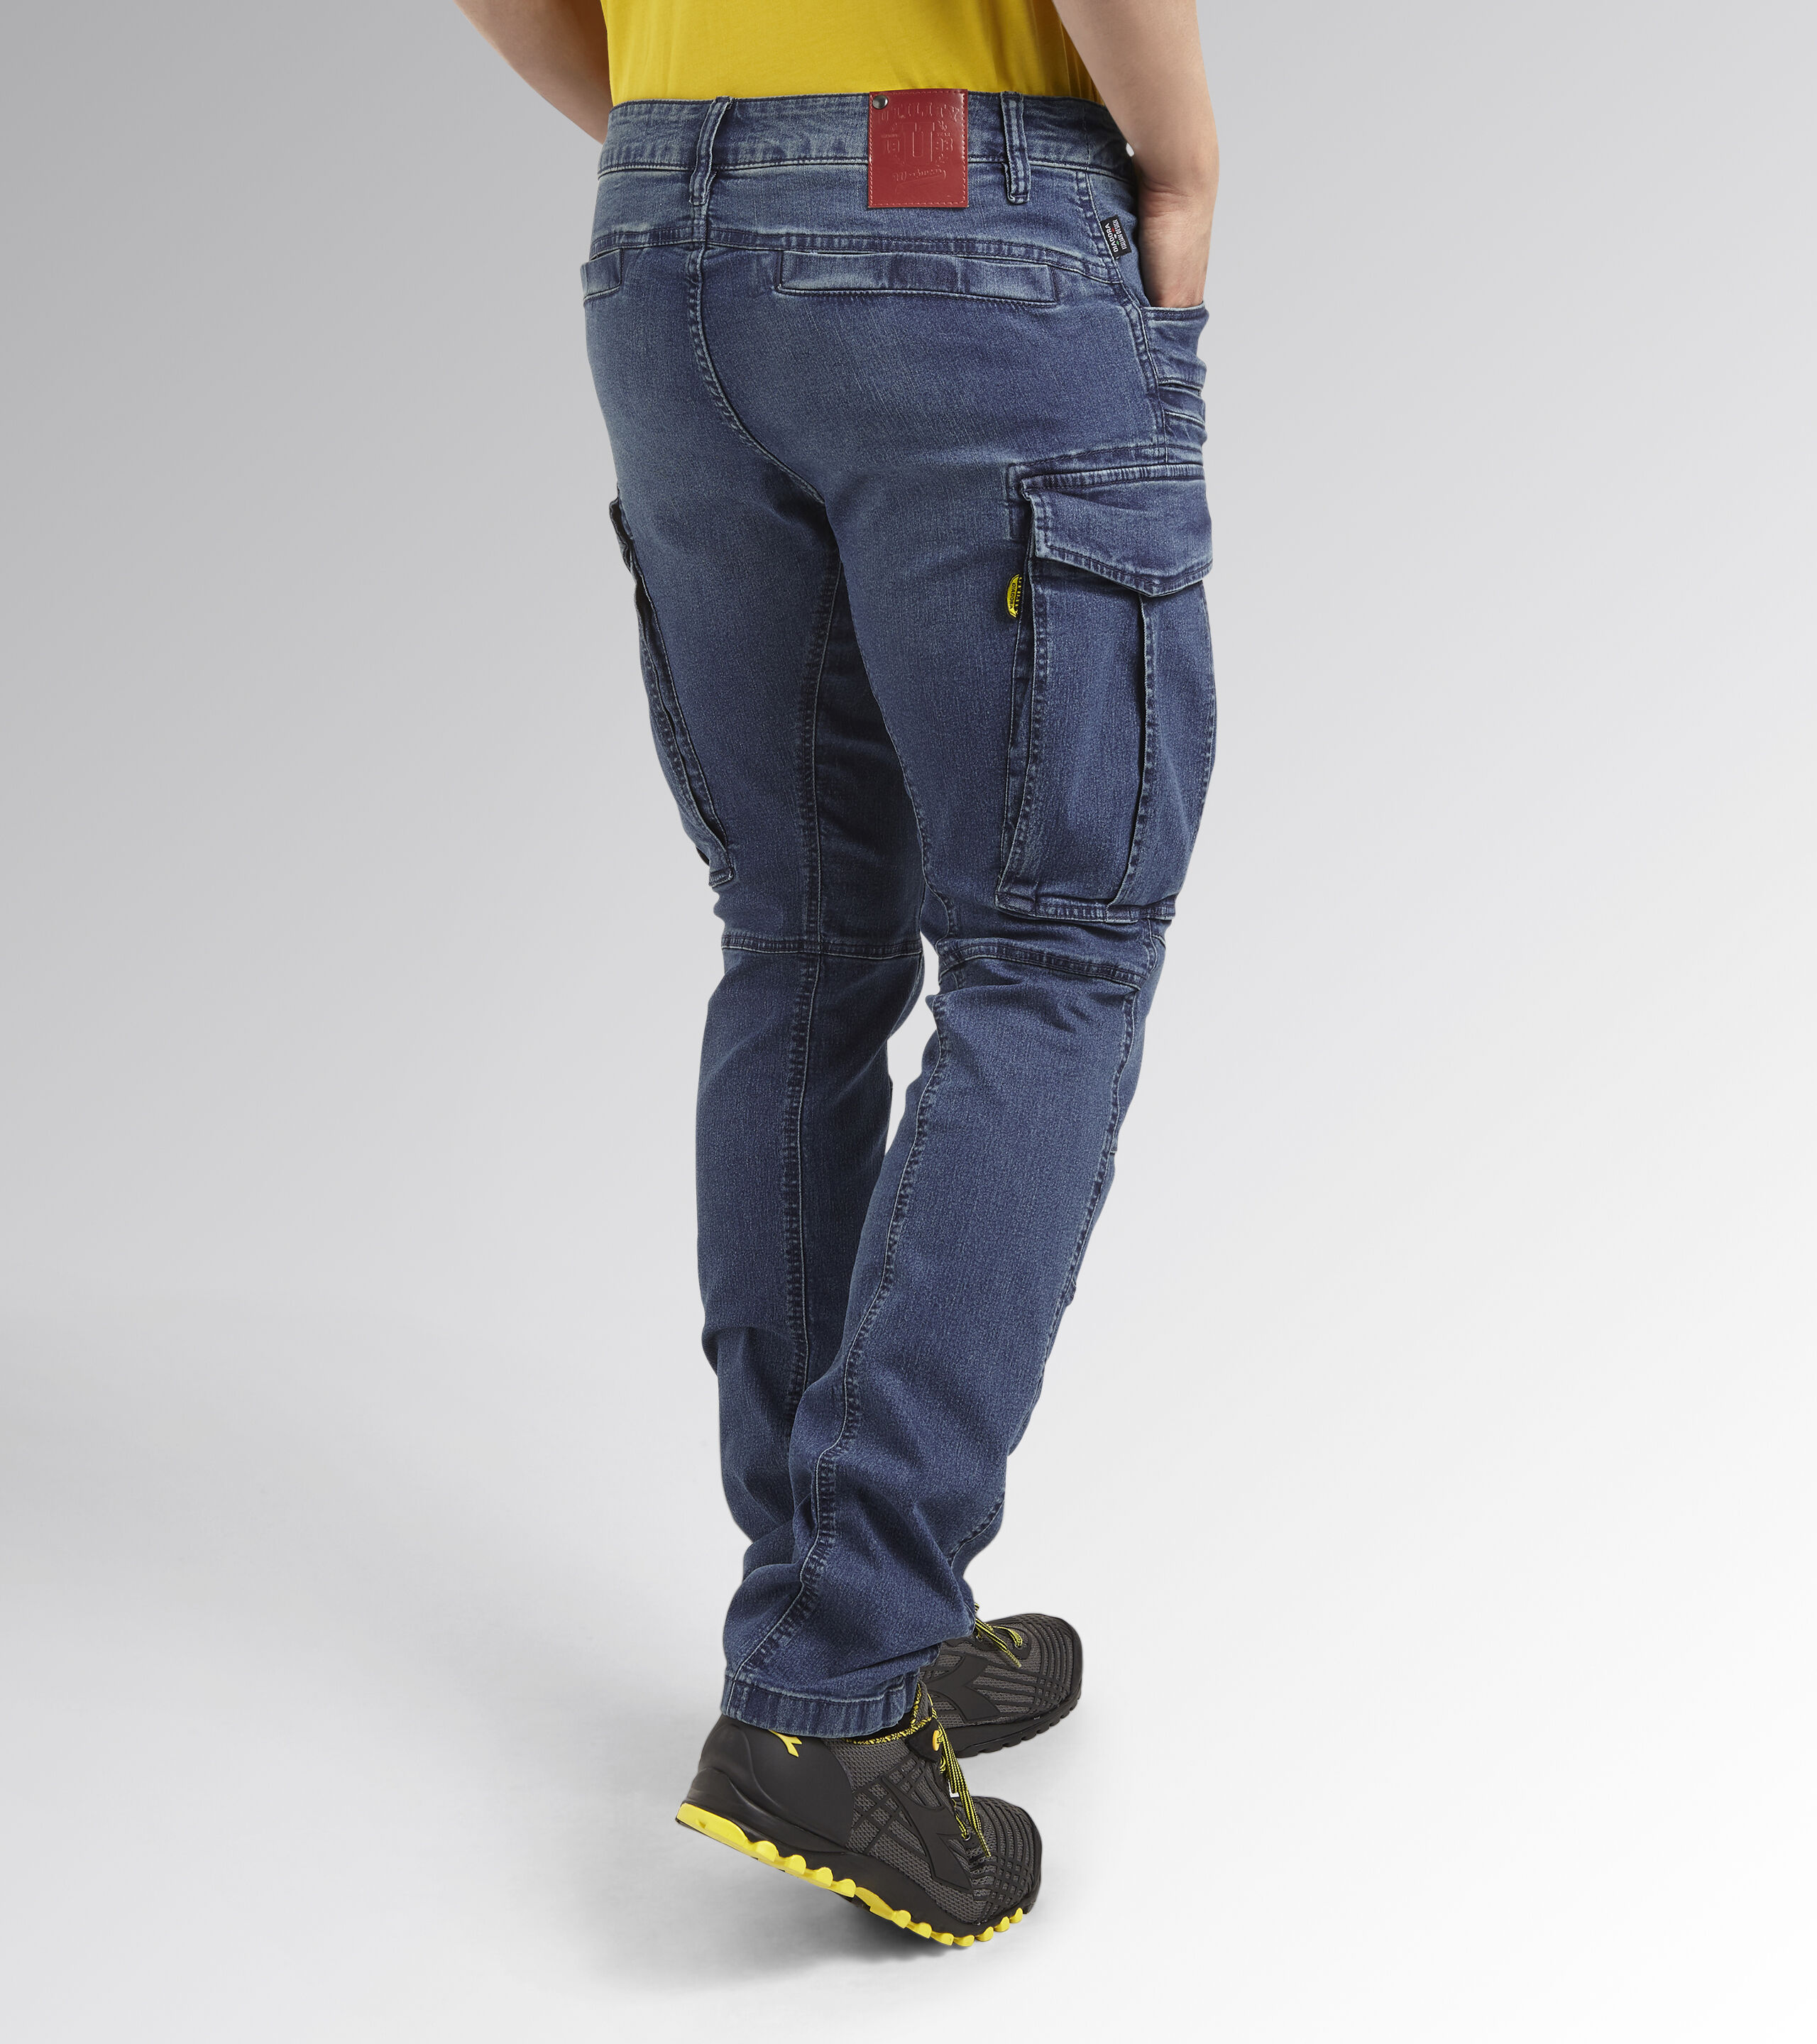 Work Wear - Work Wear Denim Jeans Manufacturer from Chennai